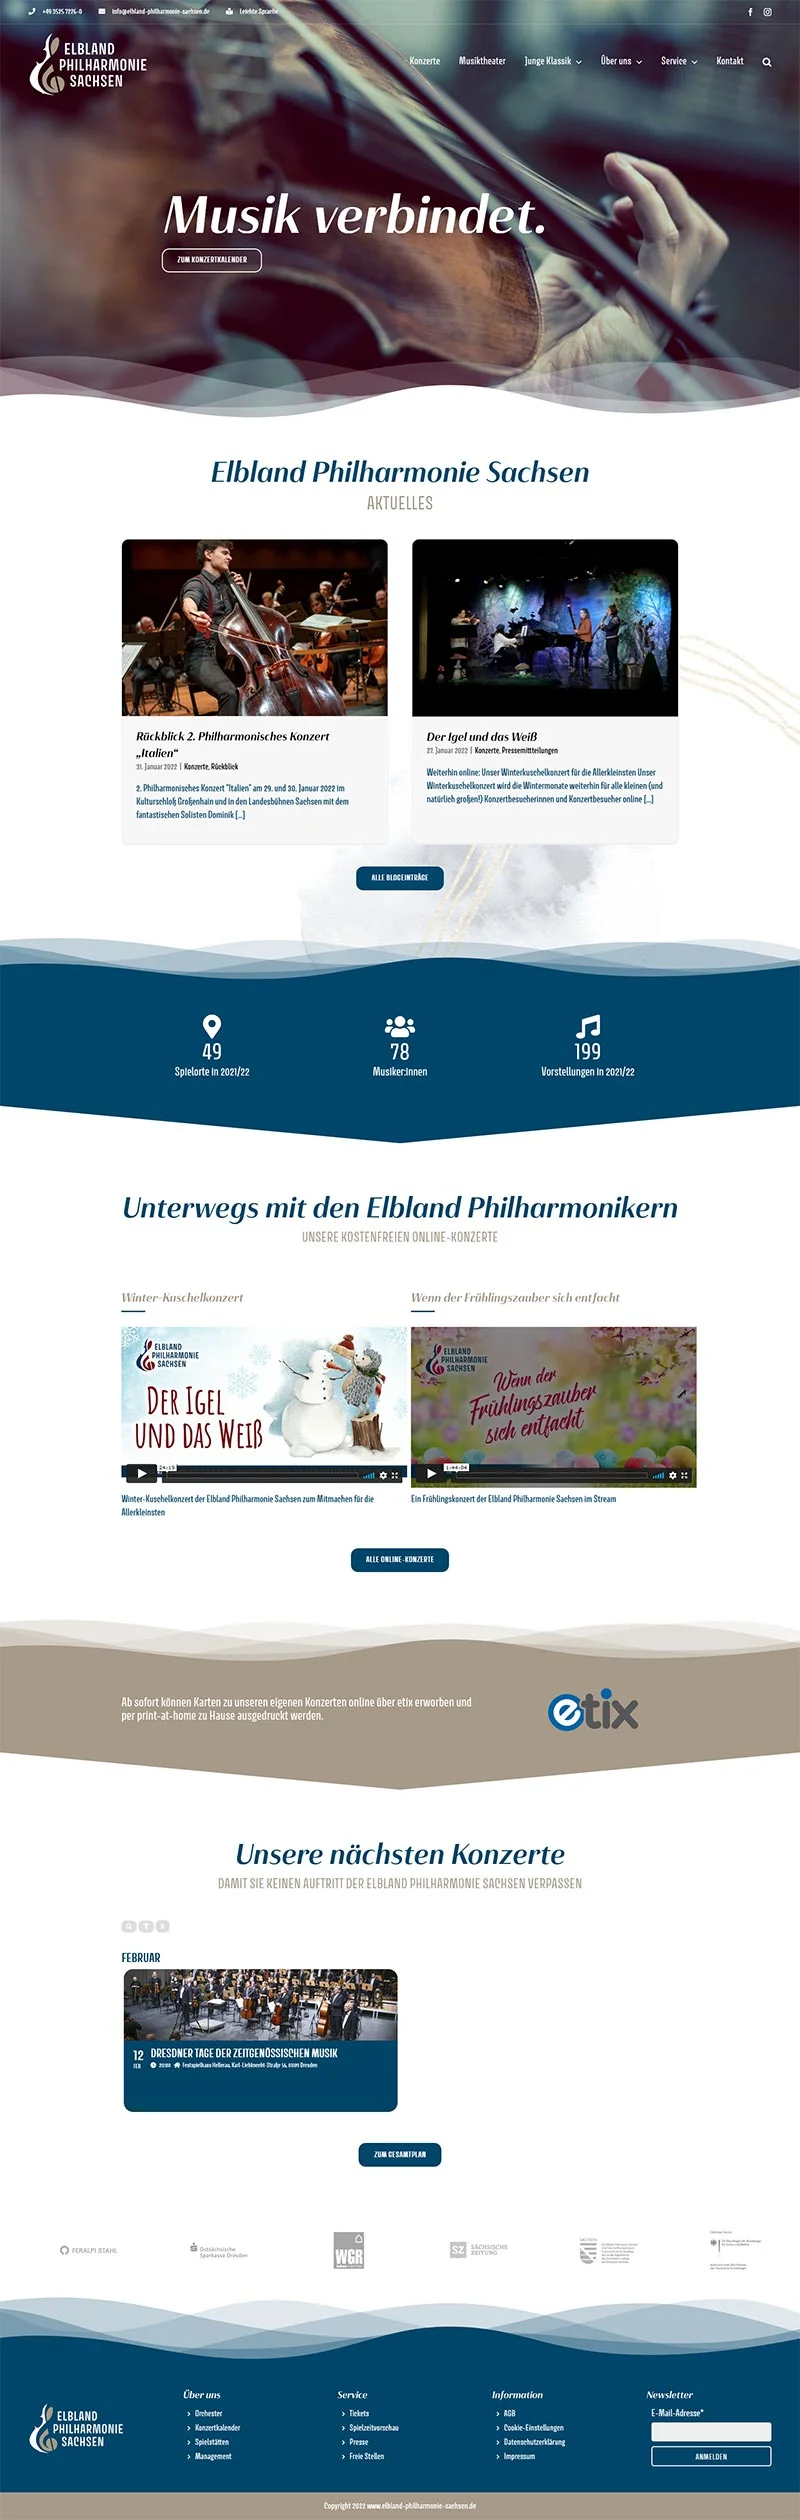 Elbland Philharmonie Sachsen - Screenshot Fullsize Startseite